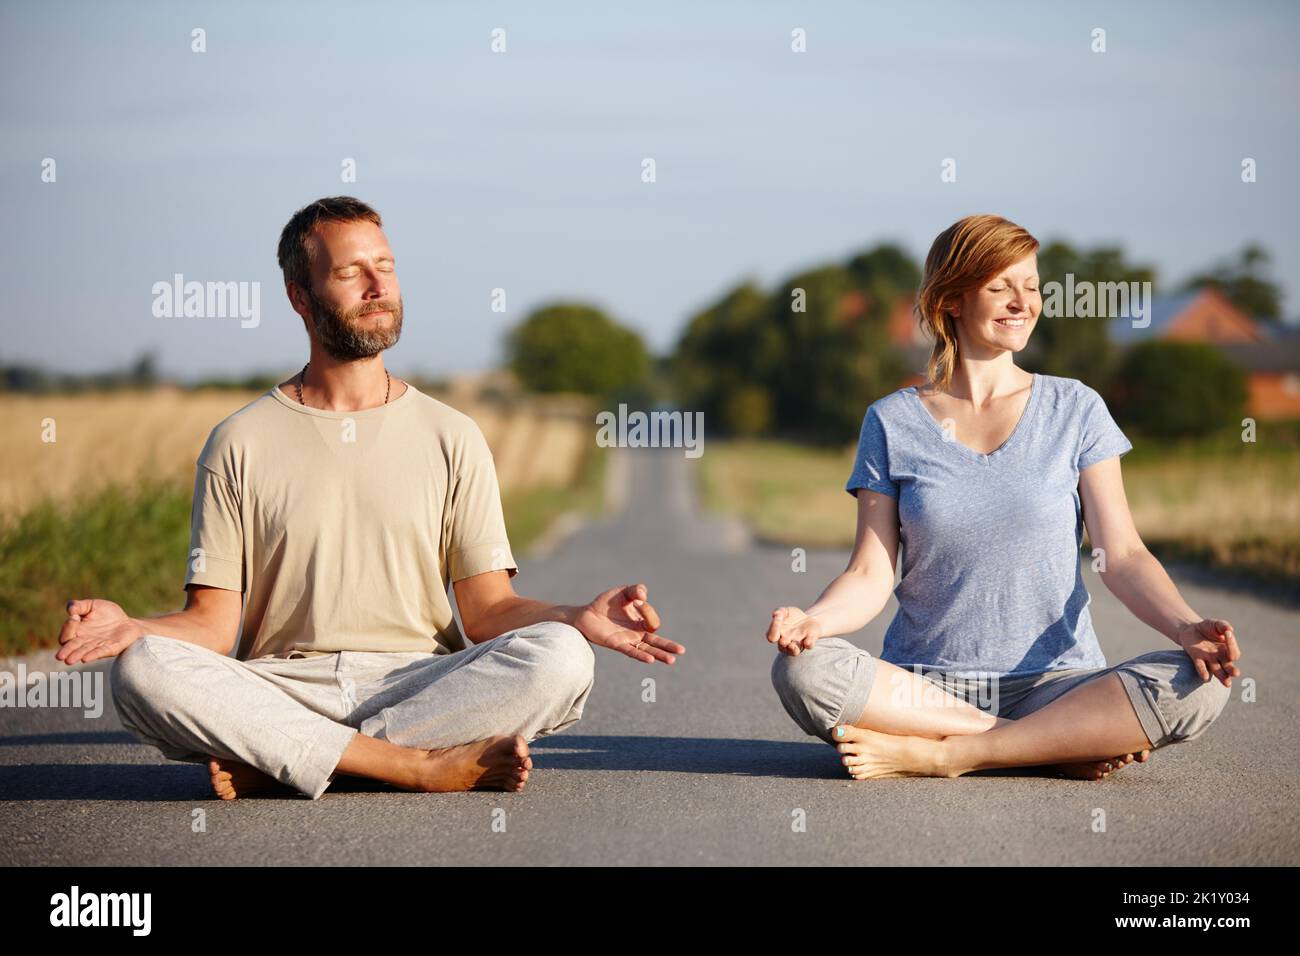 Trouver la paix intérieure ensemble. Un couple serein assis dans la position de lotus sur une route de campagne. Banque D'Images